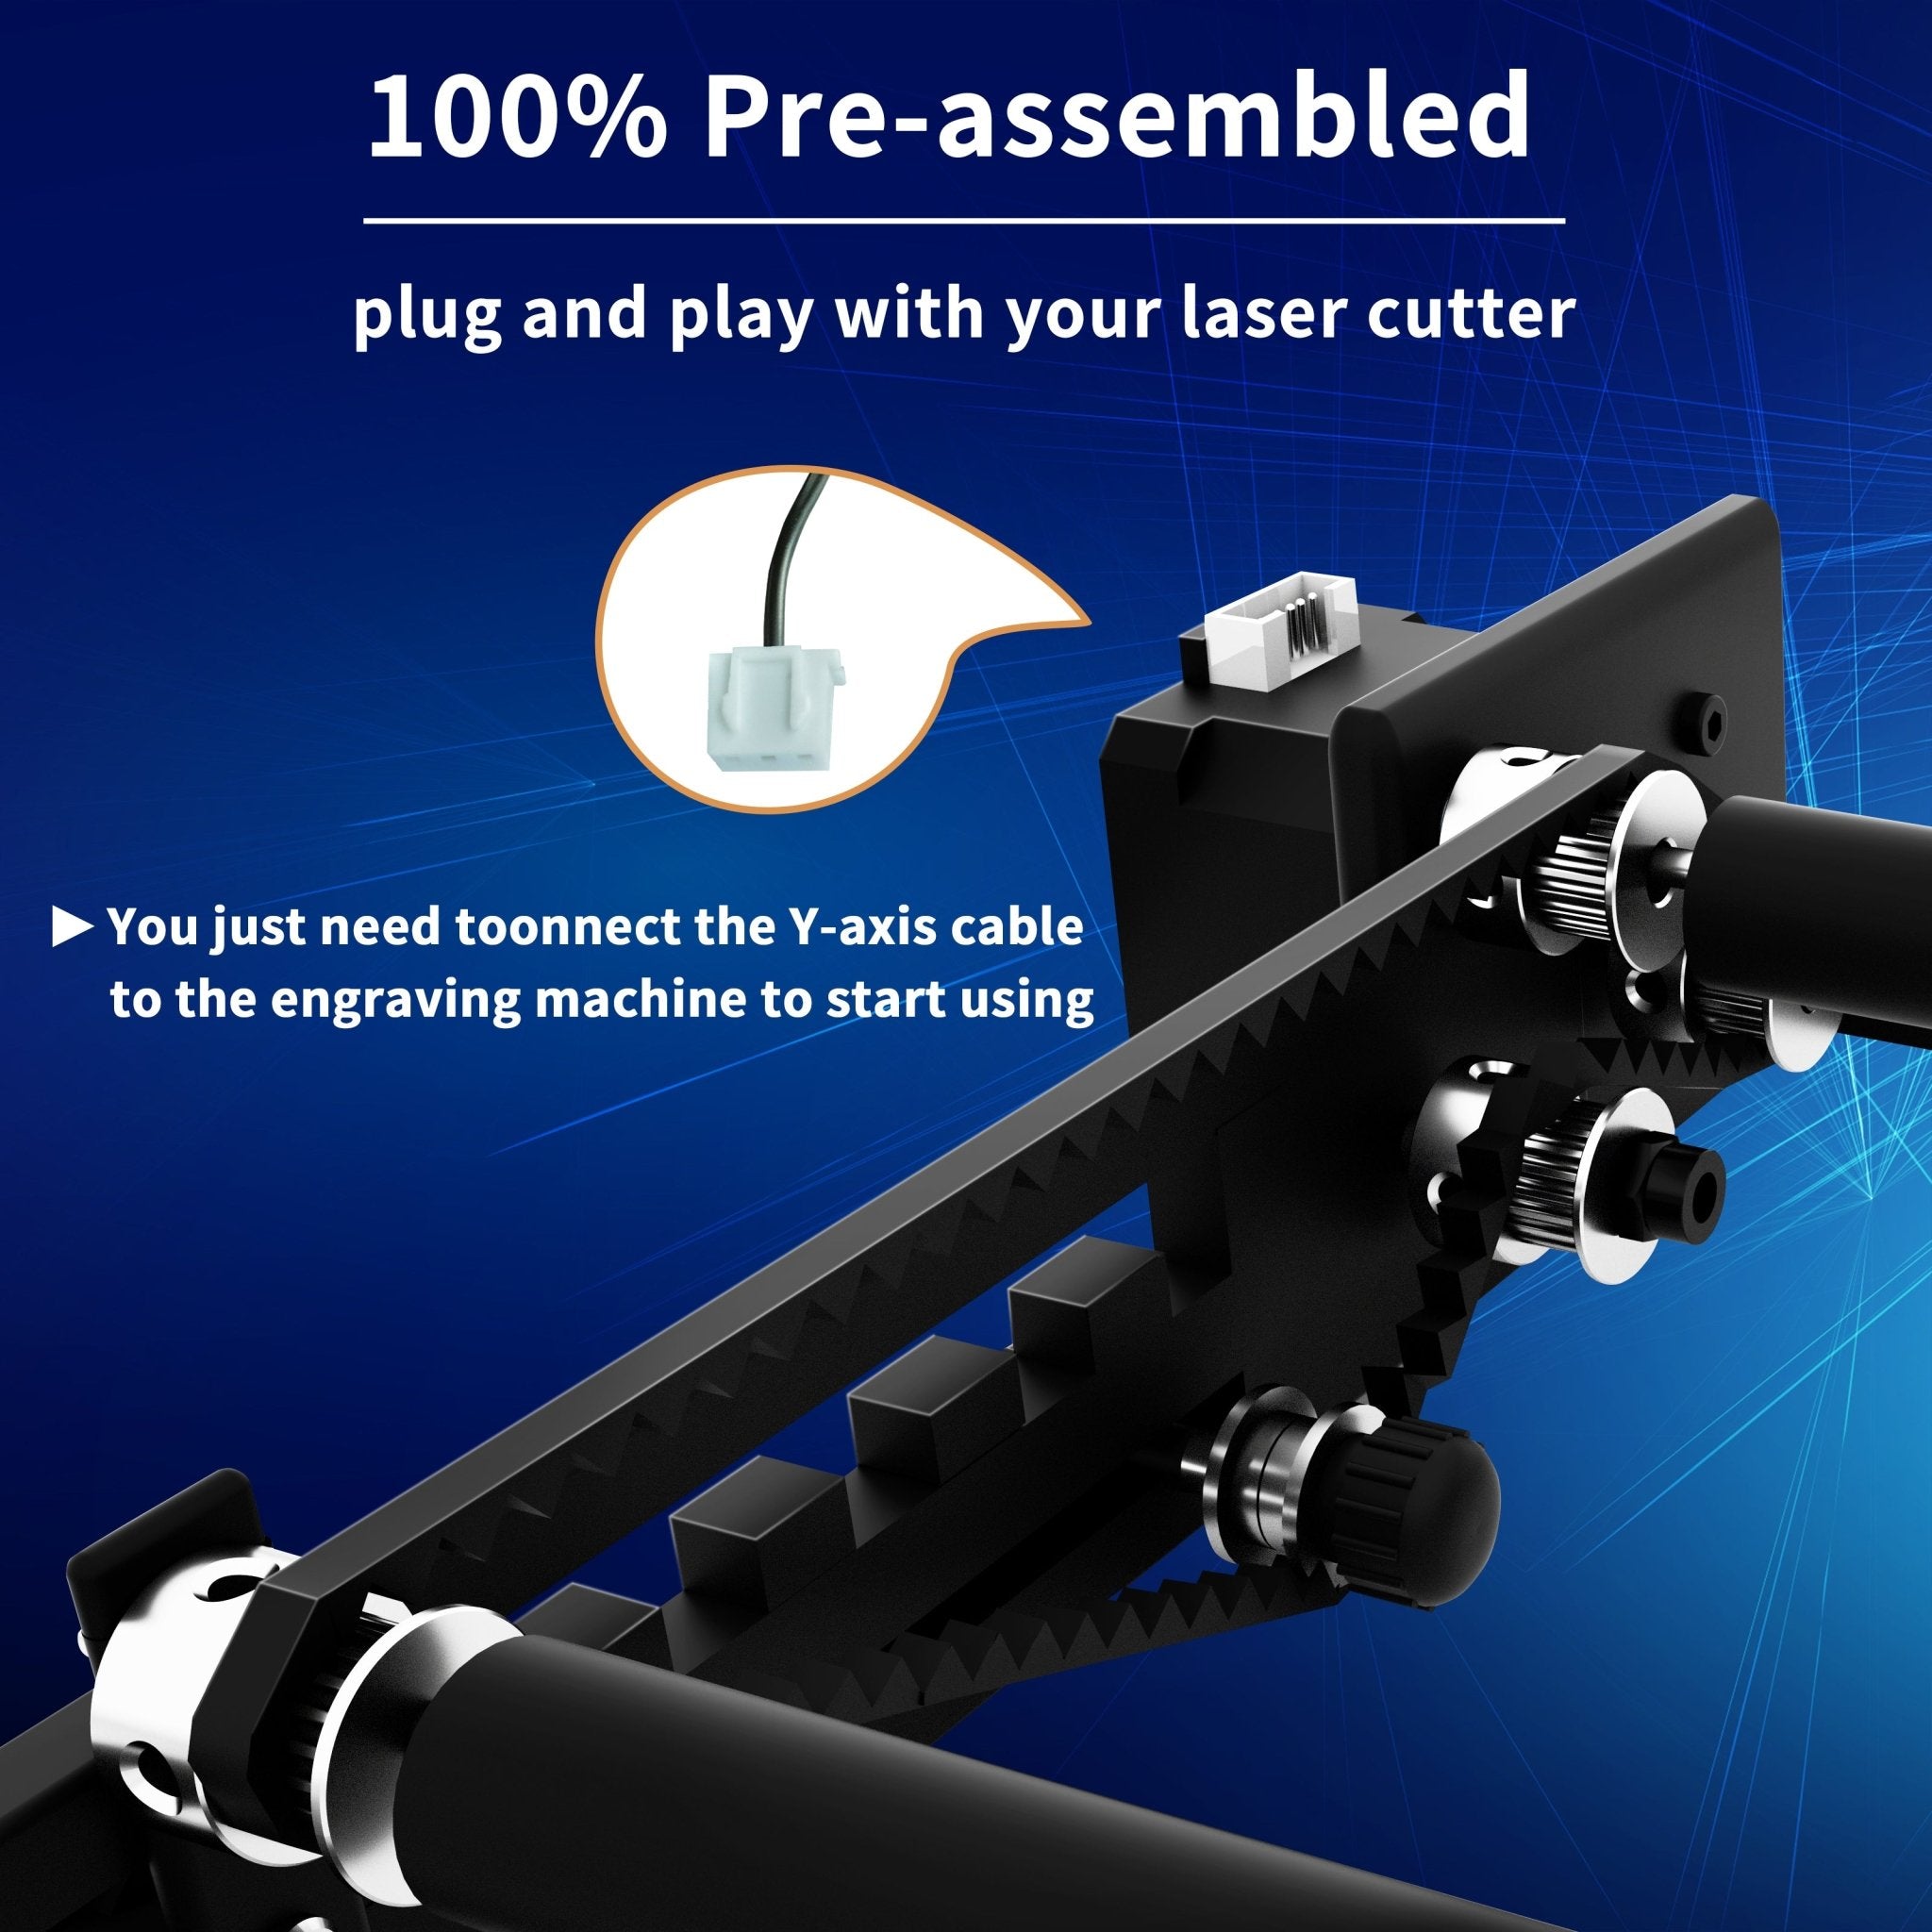 Laser Rotary Roller - LONGER